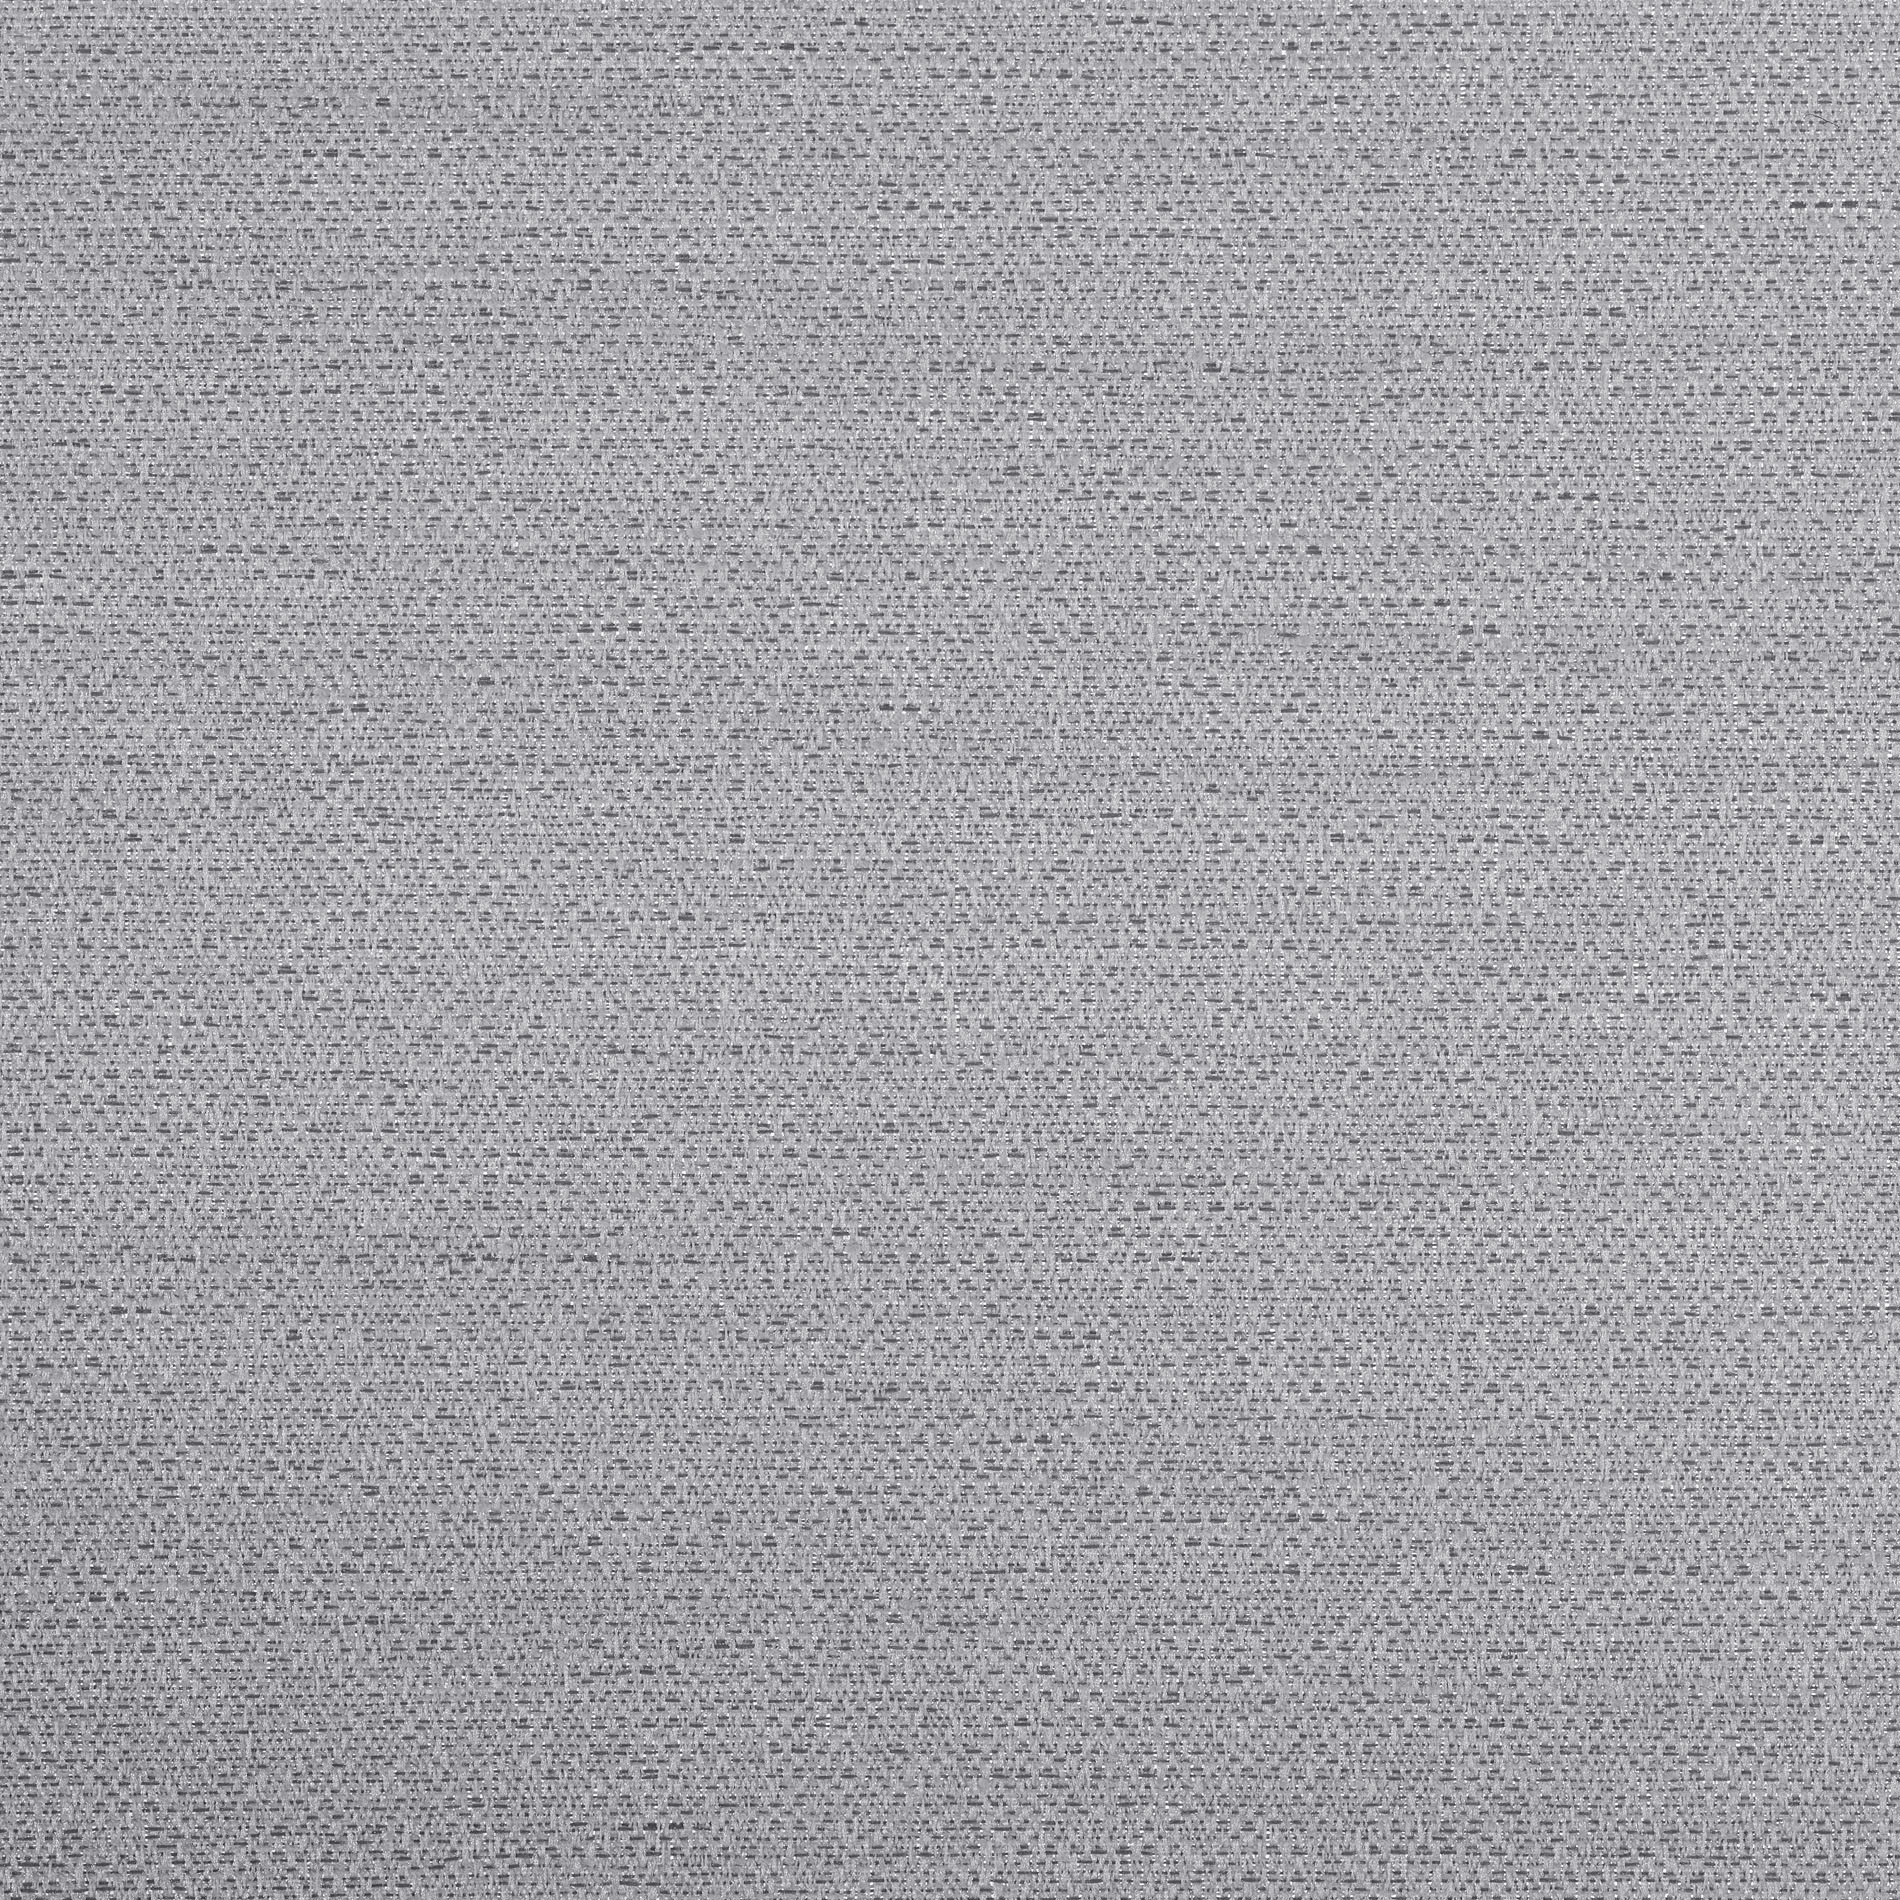 Altex - Fabric - BROOME II SEMI-TRANSPARENT - Platinum - 29BJ34565